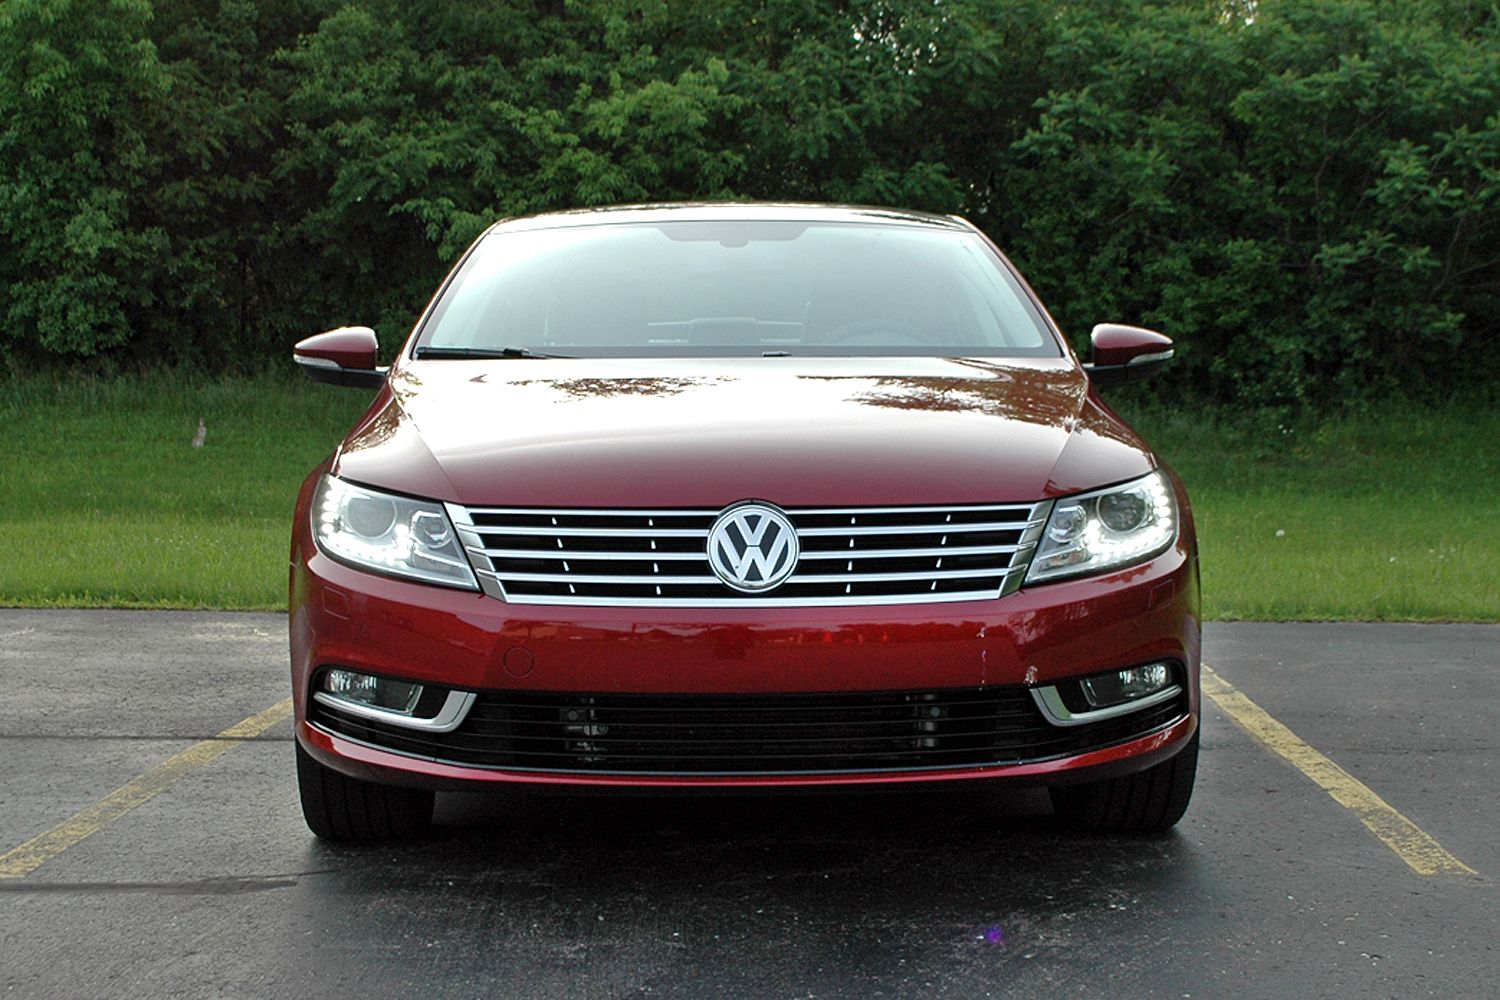 2015 Volkswagen CC - Driven